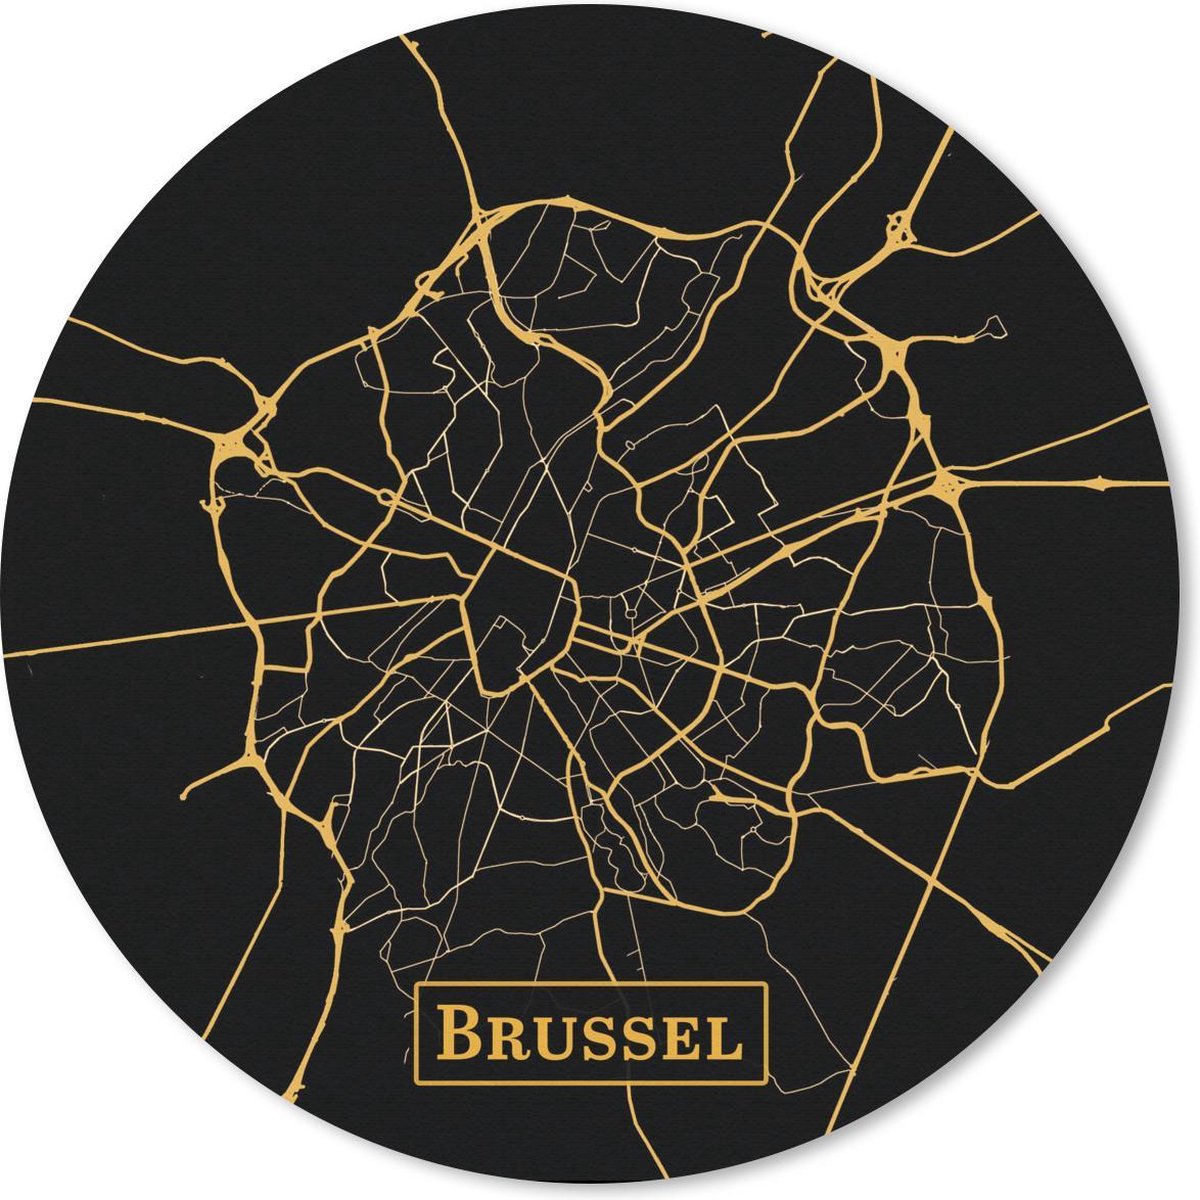 Muismat - Mousepad - Rond - Kaart - Brussel - België - Goud - Zwart - 40x40 cm - Ronde muismat